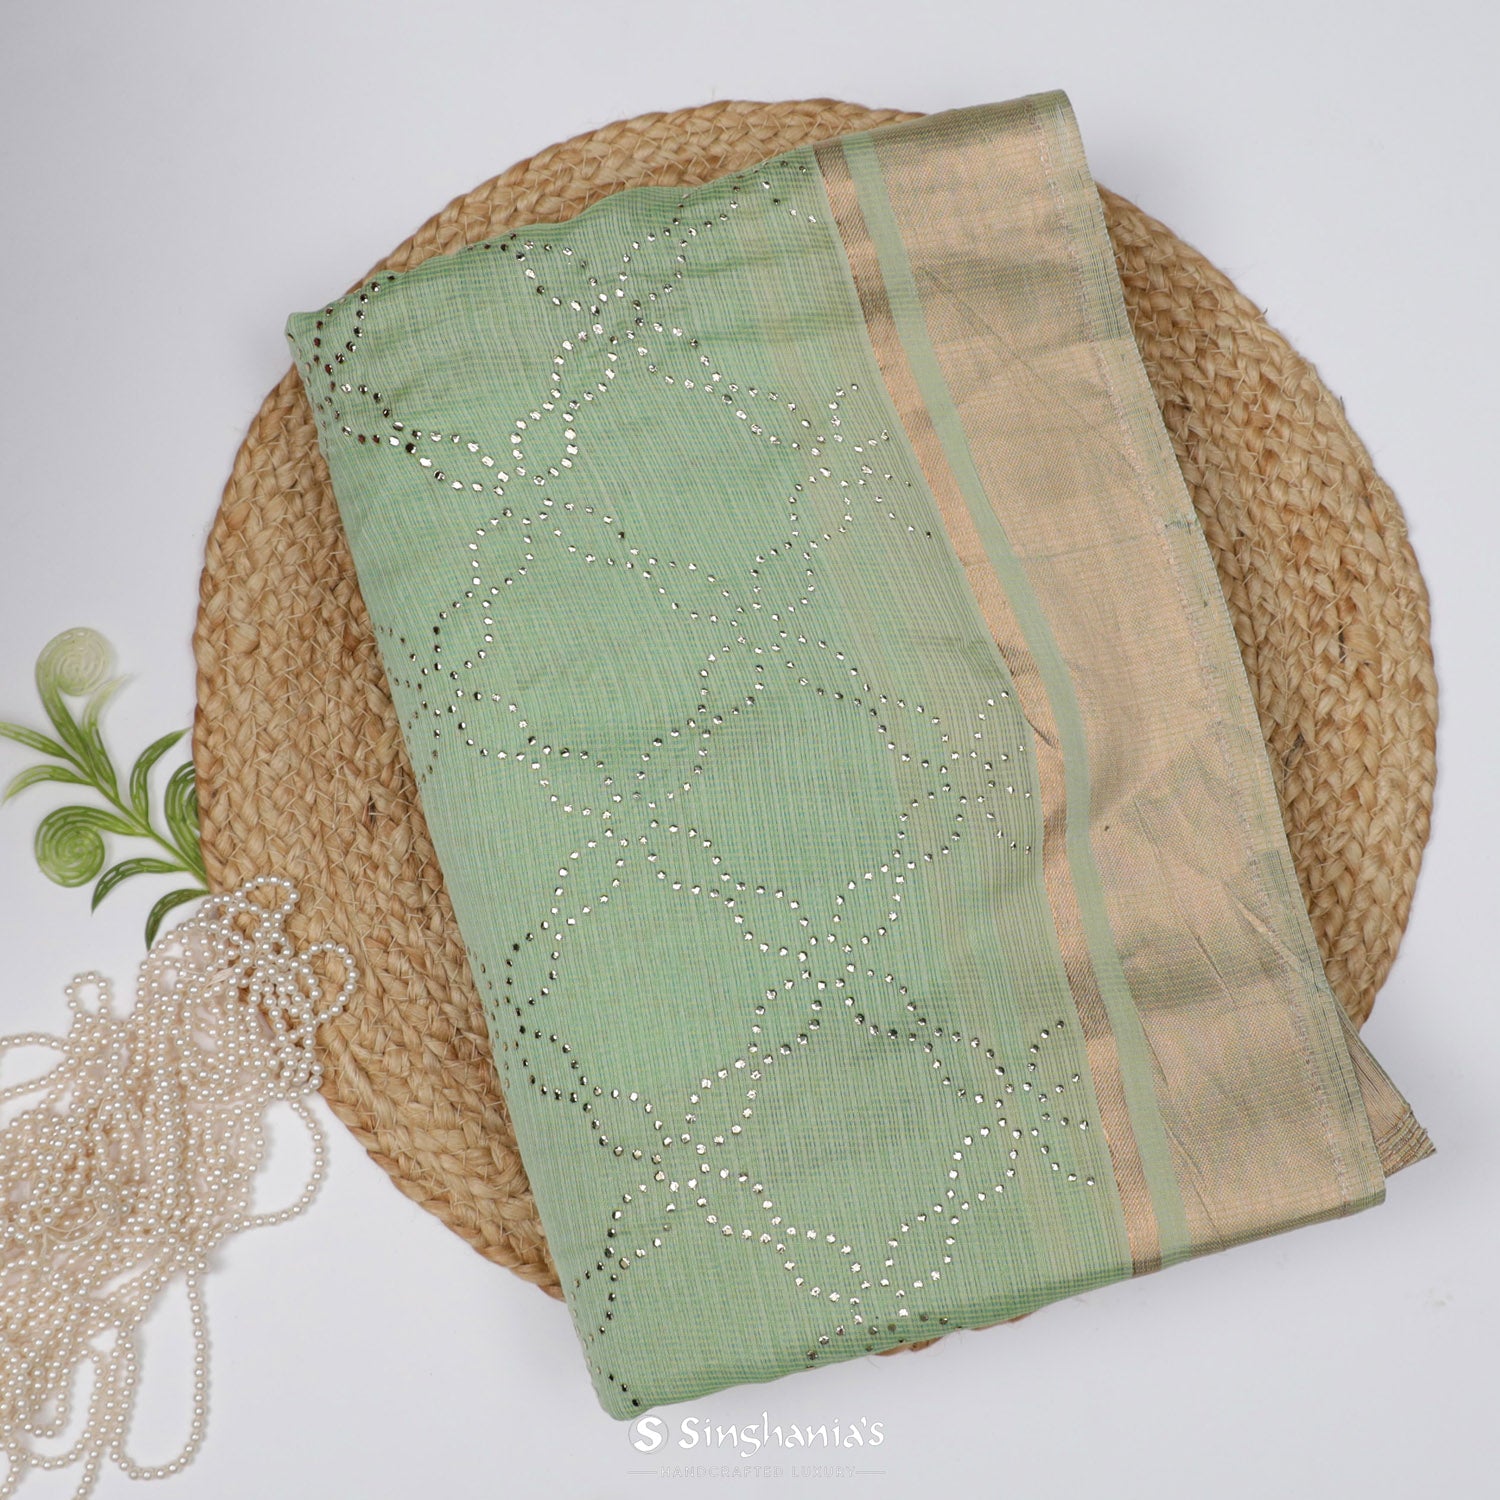 Celadon Green Kota Silk Saree With Mukaish Work In Floral Grid Pattern